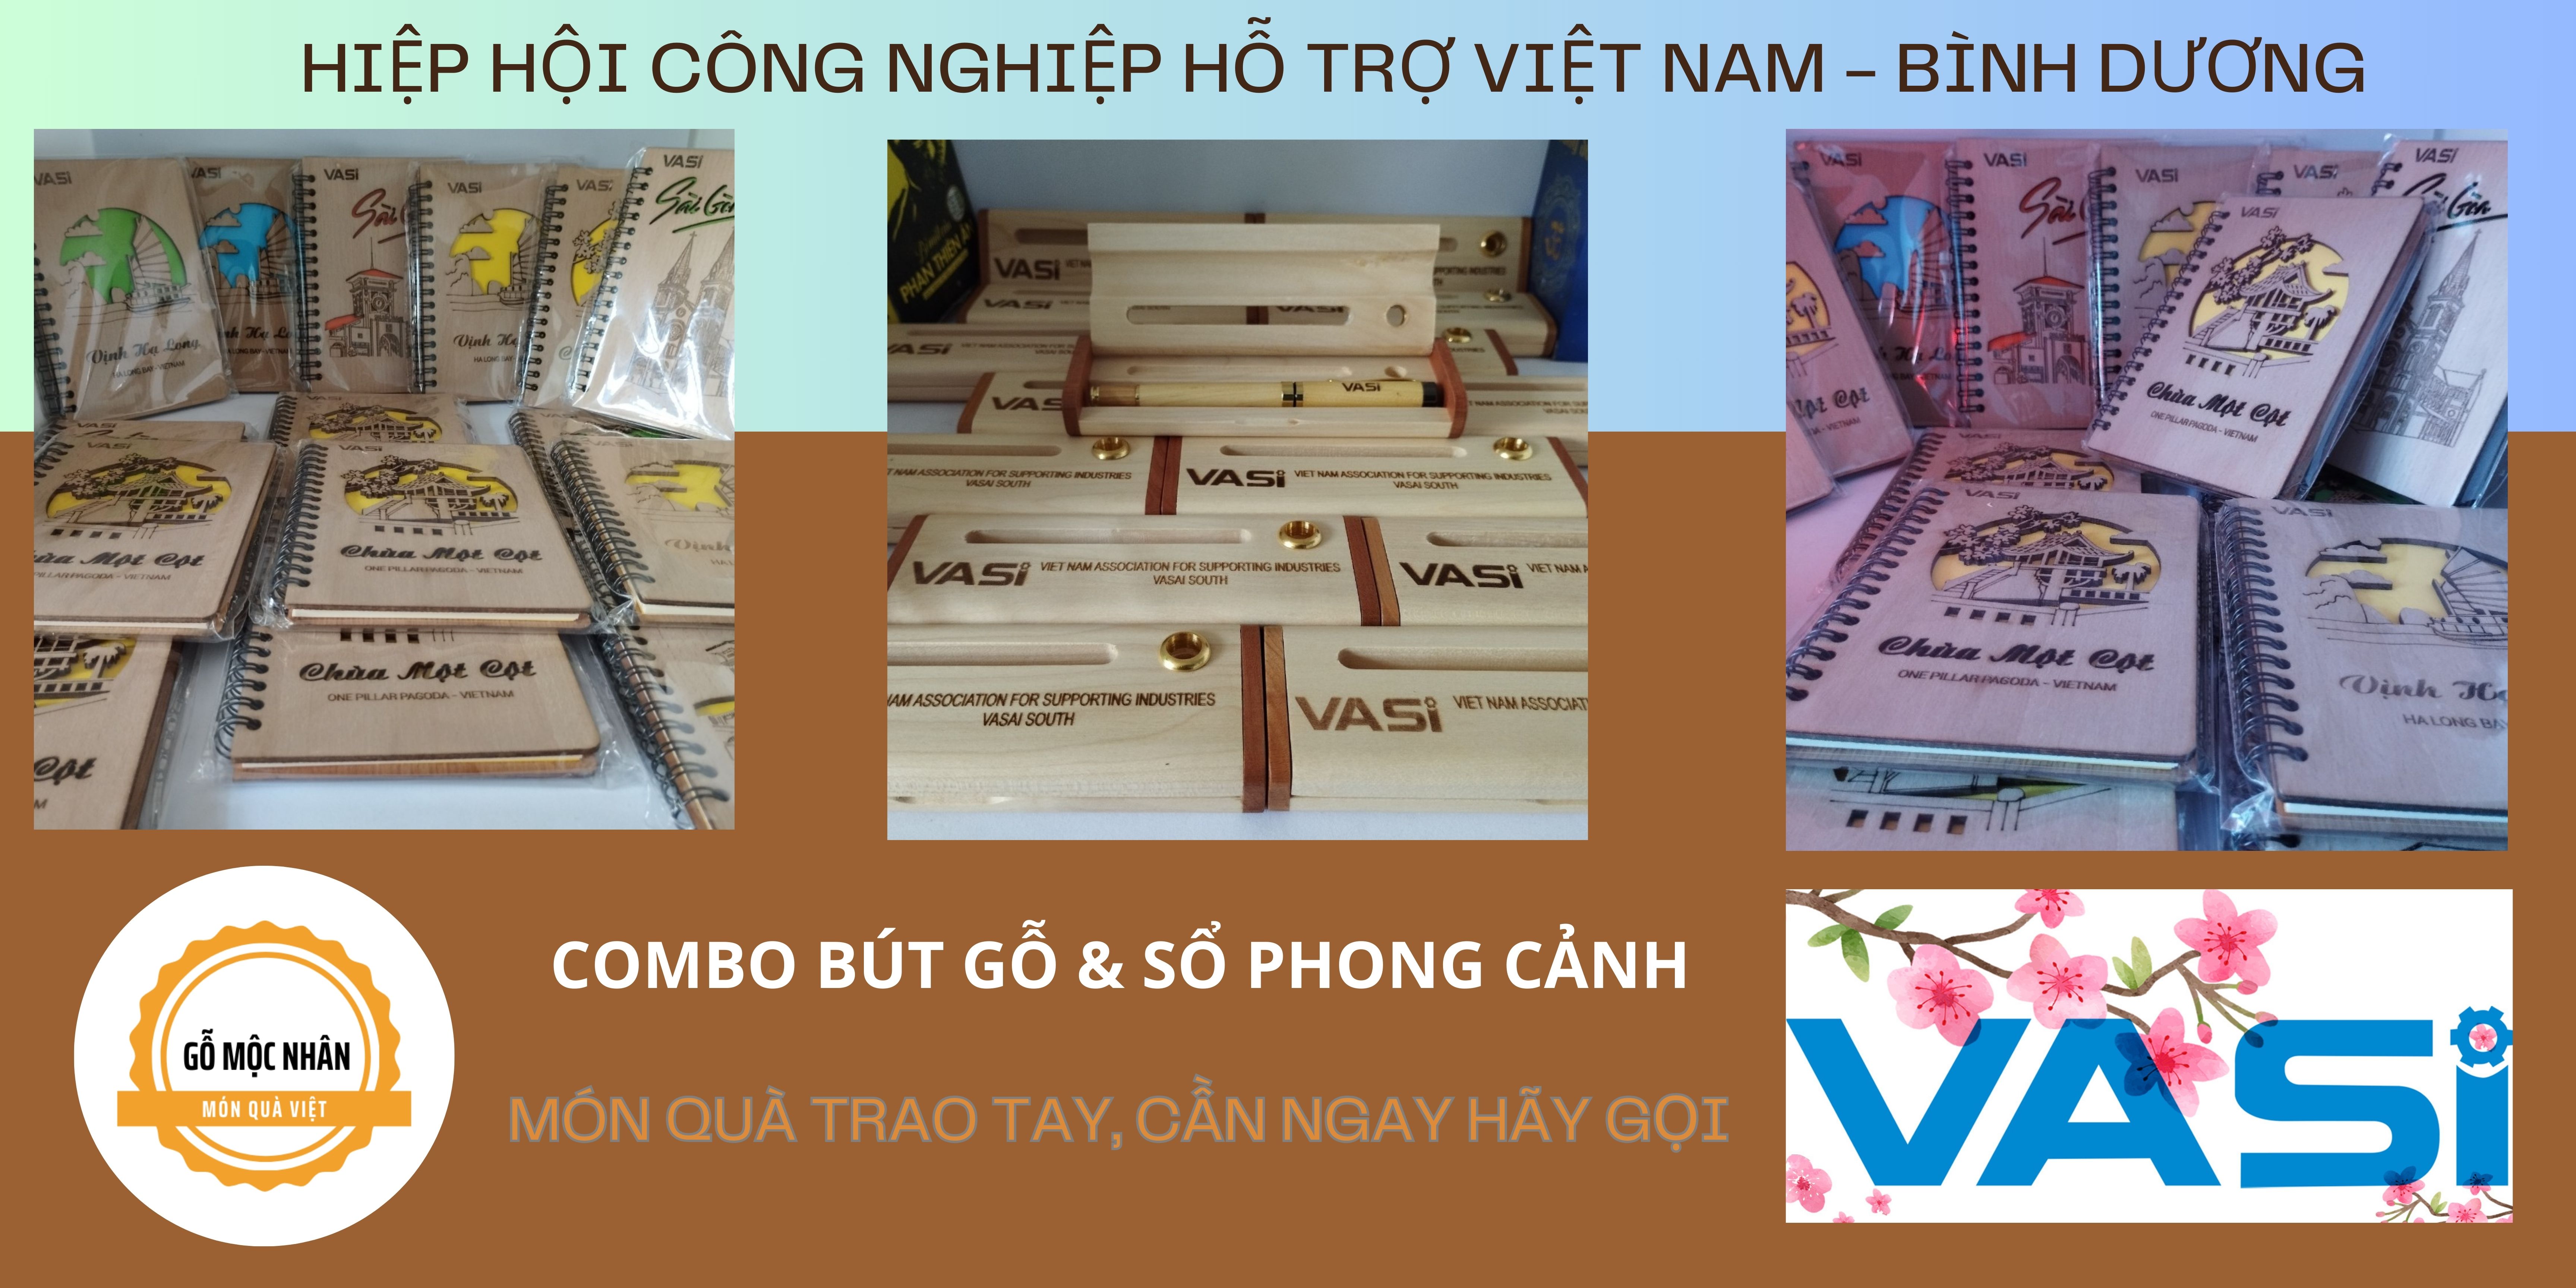 Hiệp hội công nghiệp hỗ trợ Việt Nam (VASI) tặng Quà Sổ & Bút Gỗ cho các Đại biểu và Khách mời tham gia Đại hội